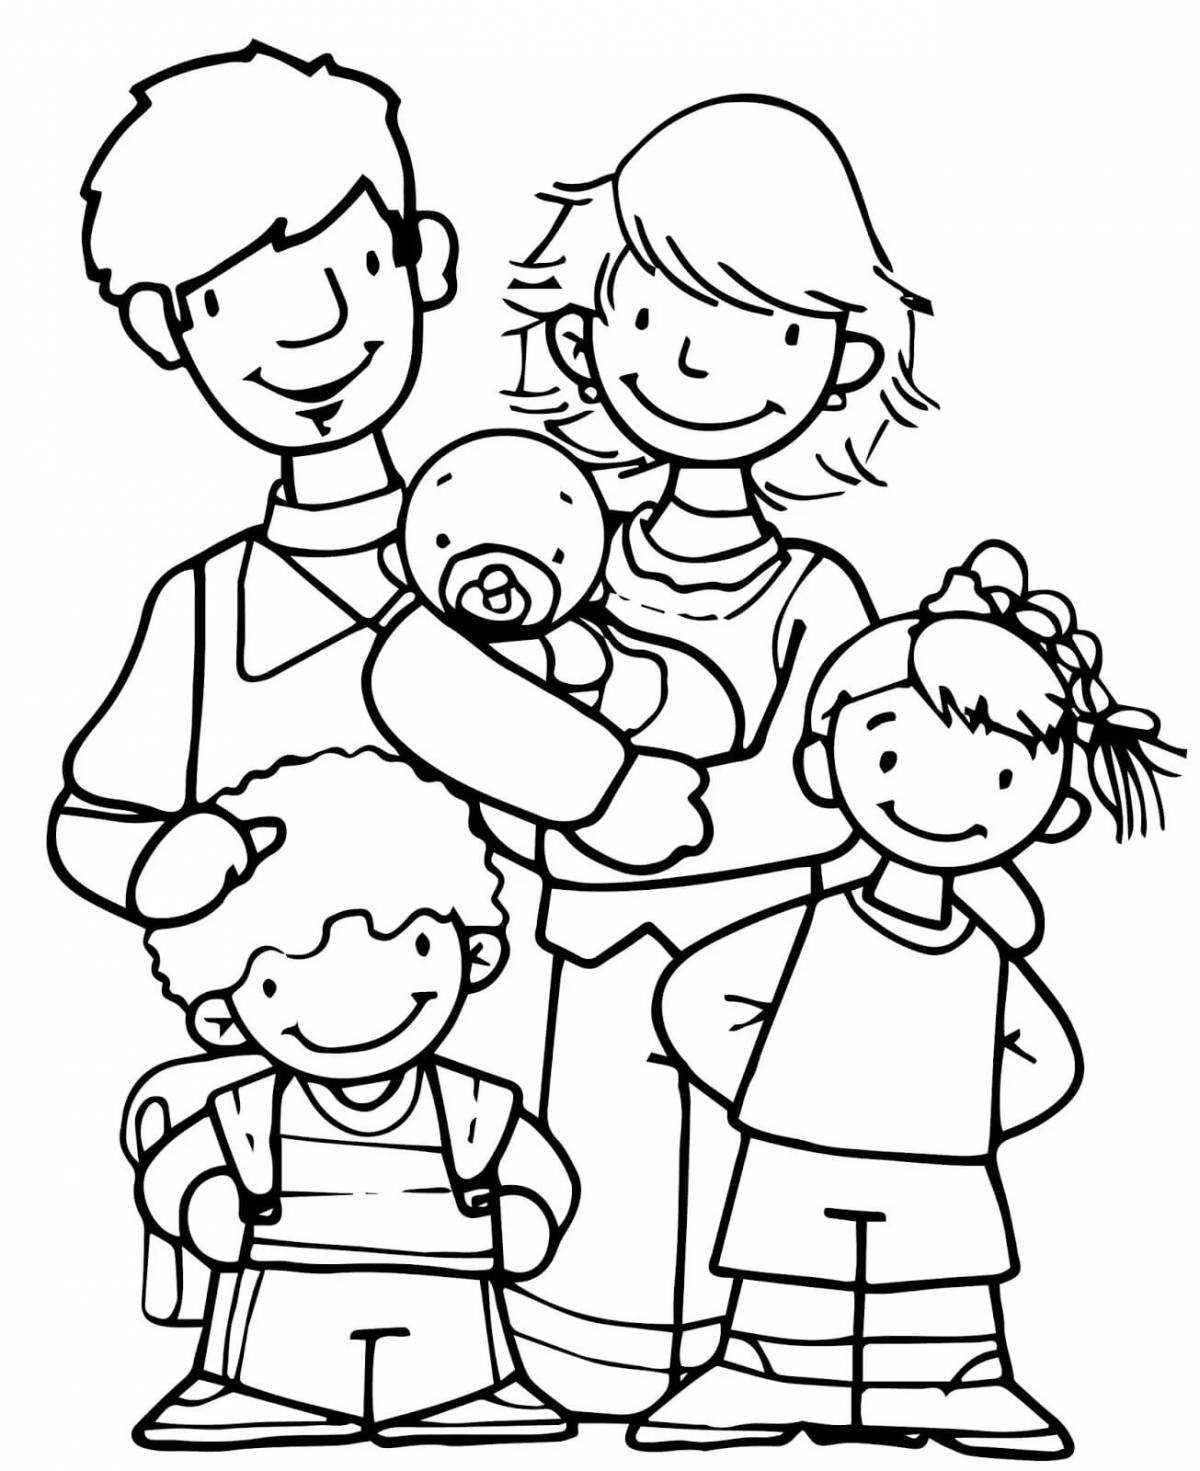 Красочная семейная раскраска для детей 4-5 лет